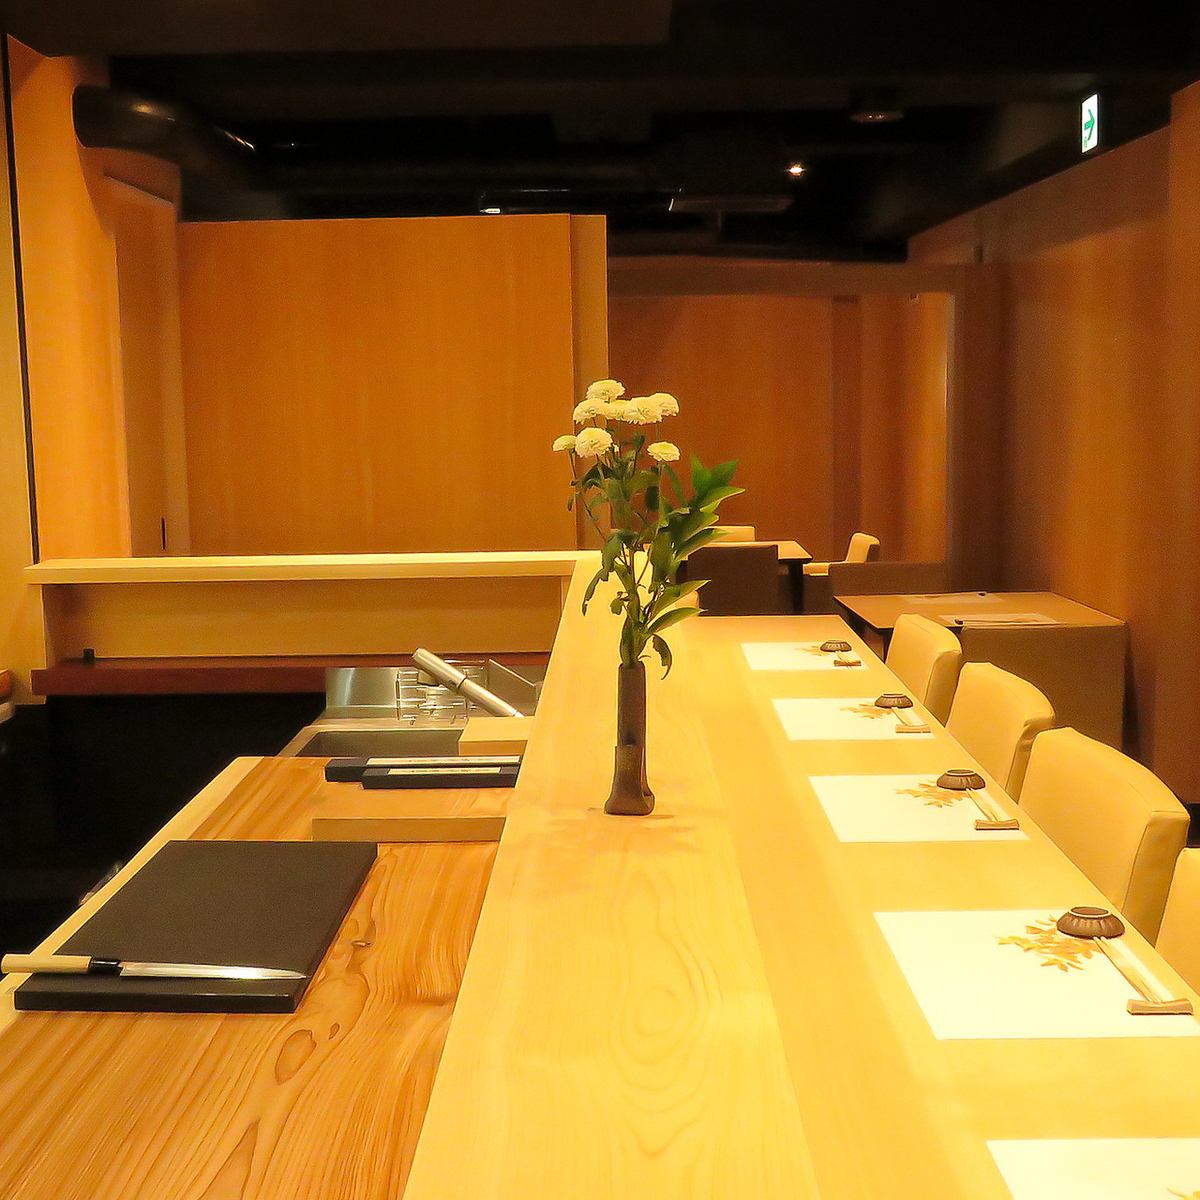 一家可以悠閒地享用正宗日本料理的餐廳，看起來很漂亮!是一家公司宴會和娛樂必去的日本餐廳。